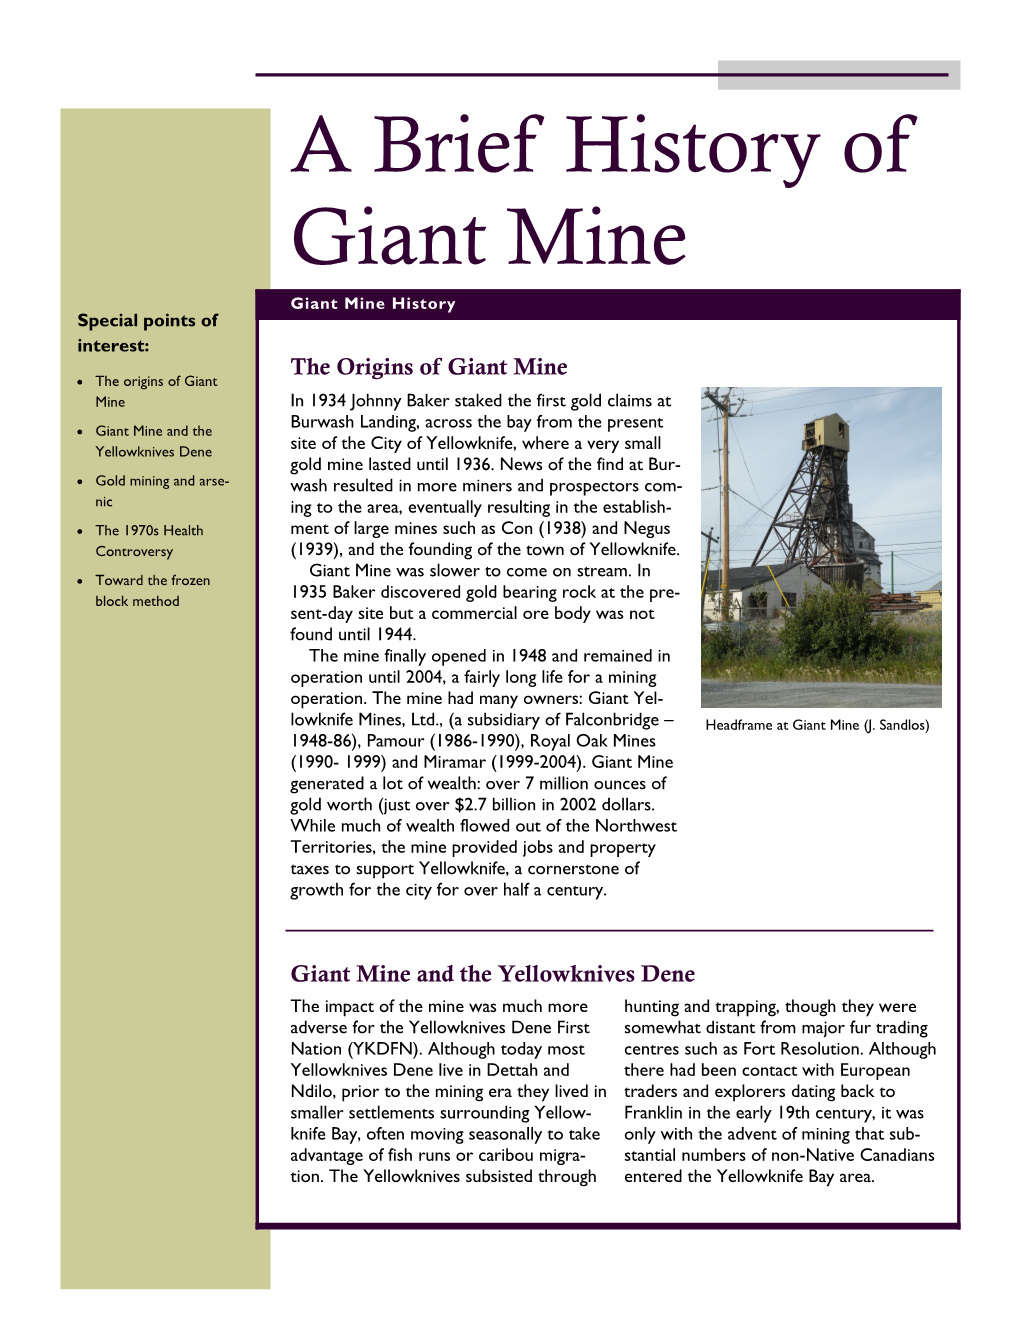 Giant Mine History Backgrounder